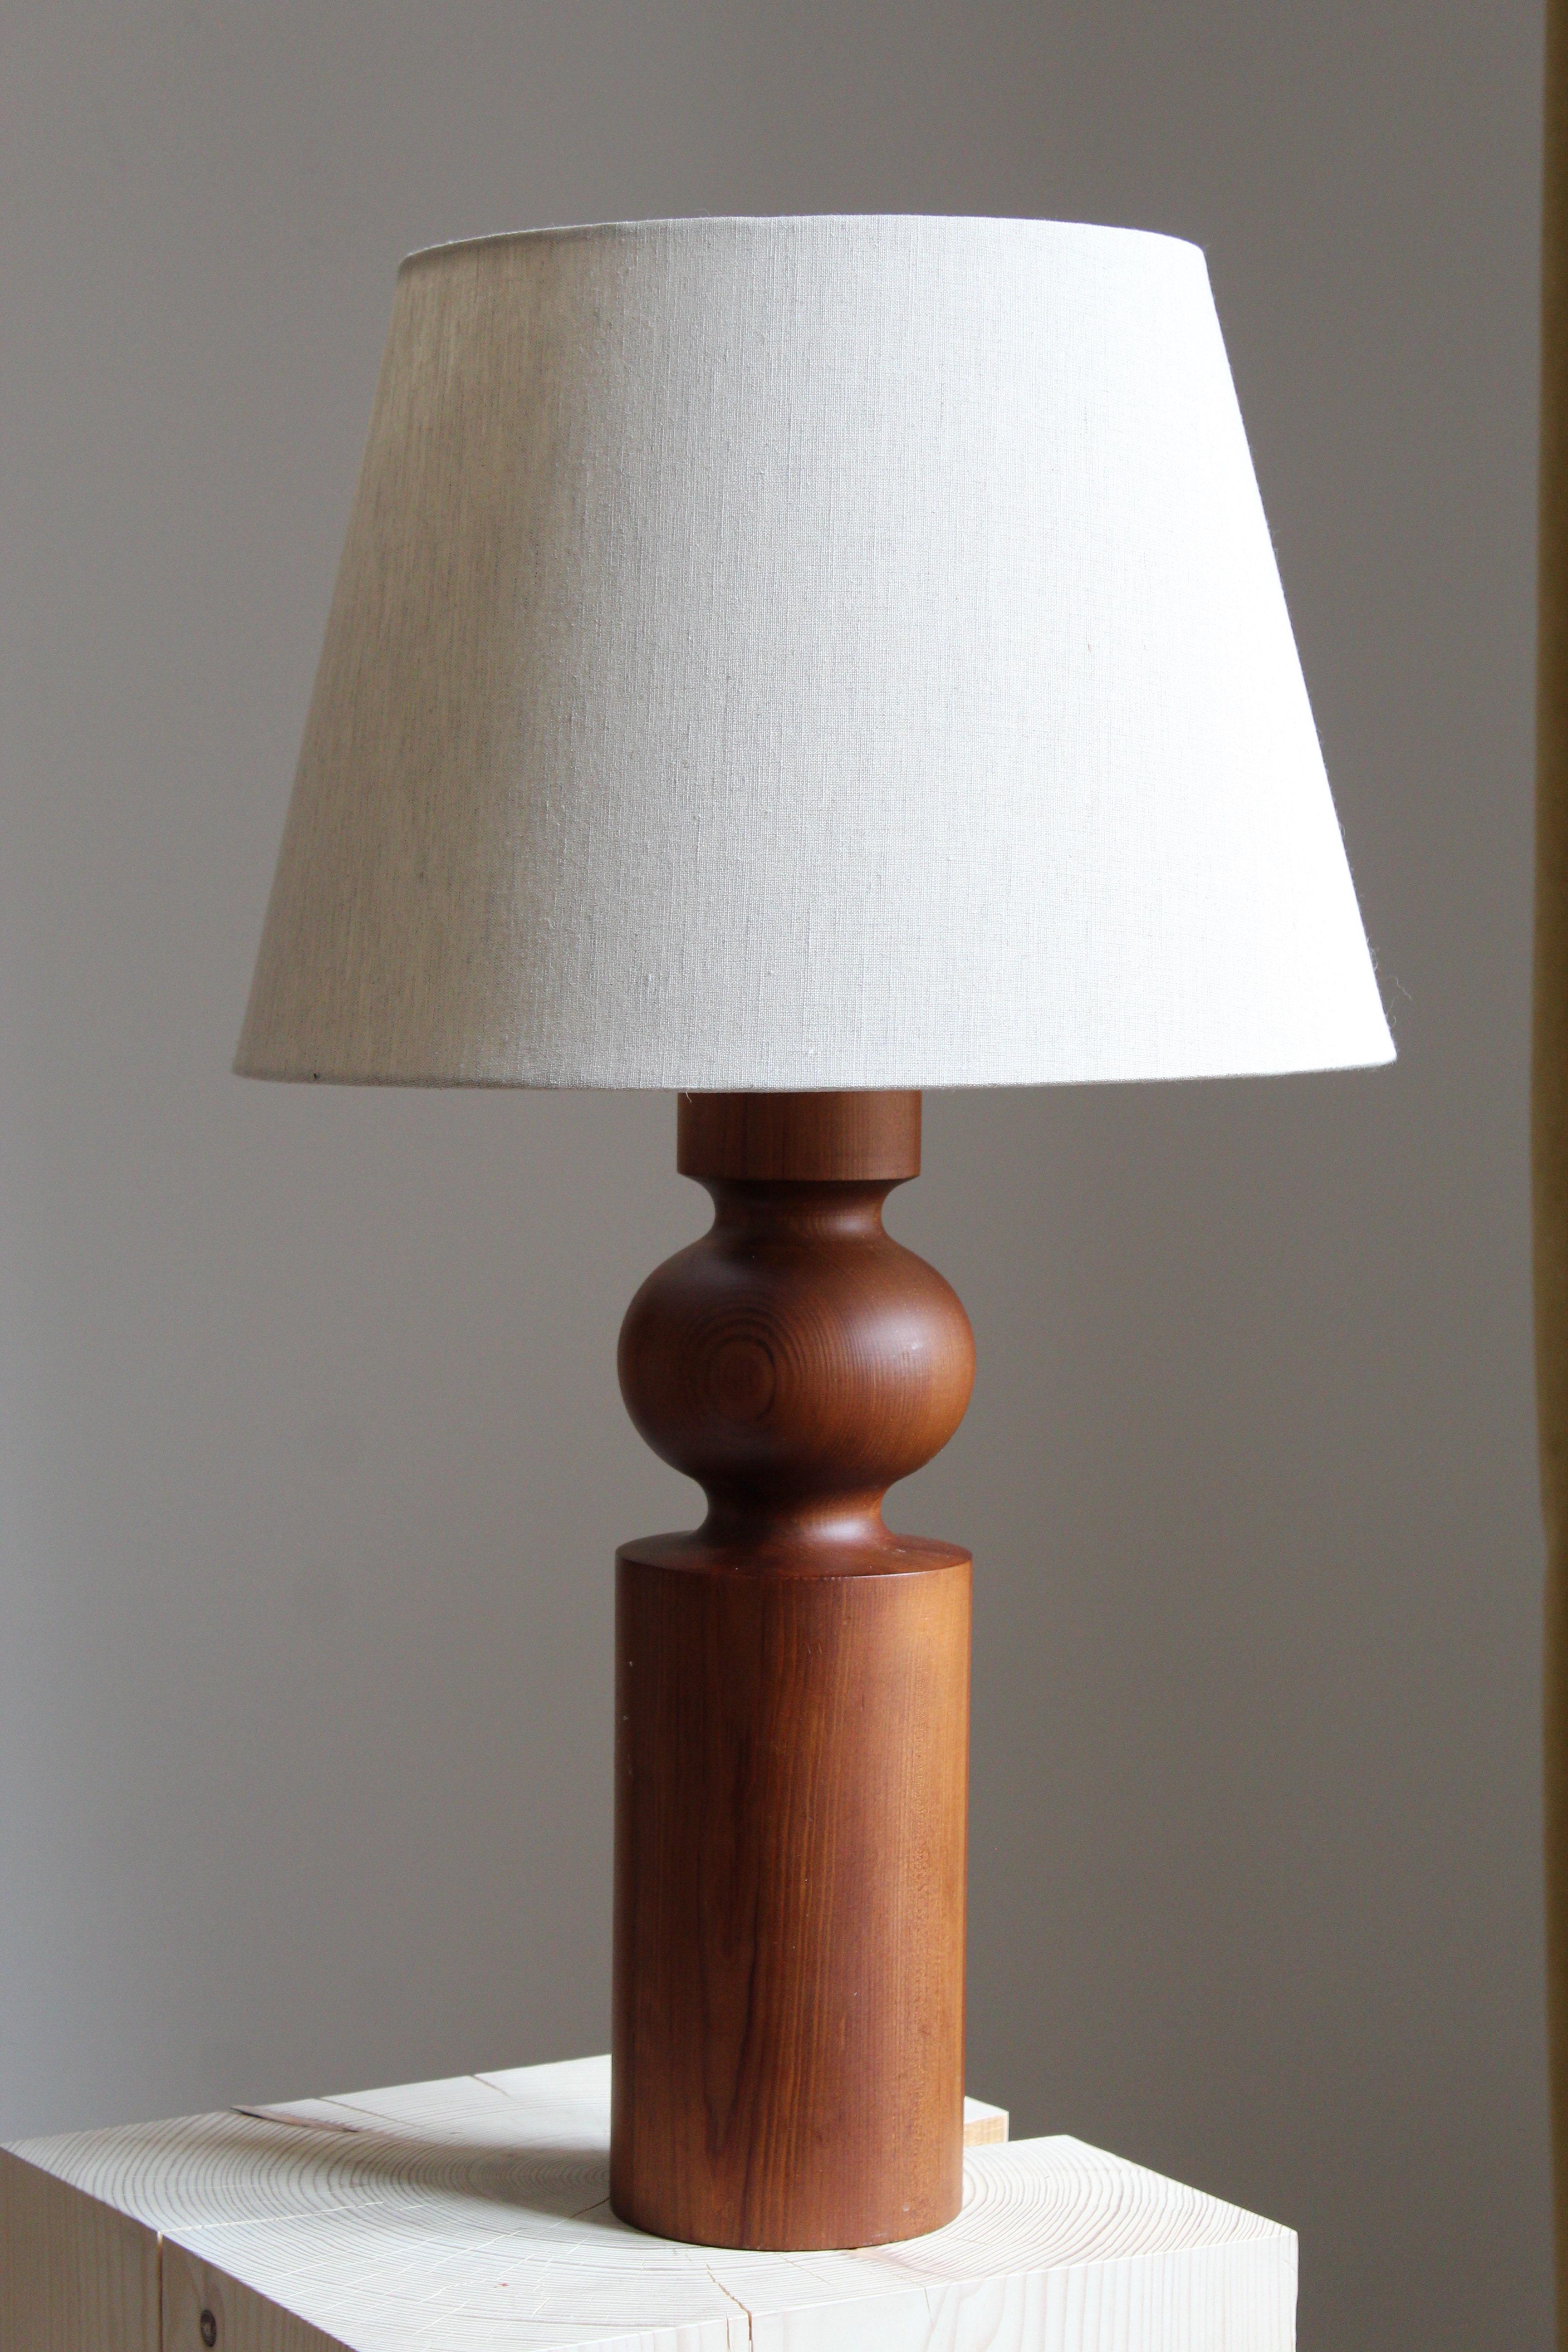 Une lampe de table en pin massif. Conçu par Uno Kristiansson, pour Luxus, Suède, années 1960.

Vendu sans abat-jour, les mesures indiquées sont sans abat-jour.

Parmi les autres designers de l'époque figurent Axel Einar Hjorth, Roland